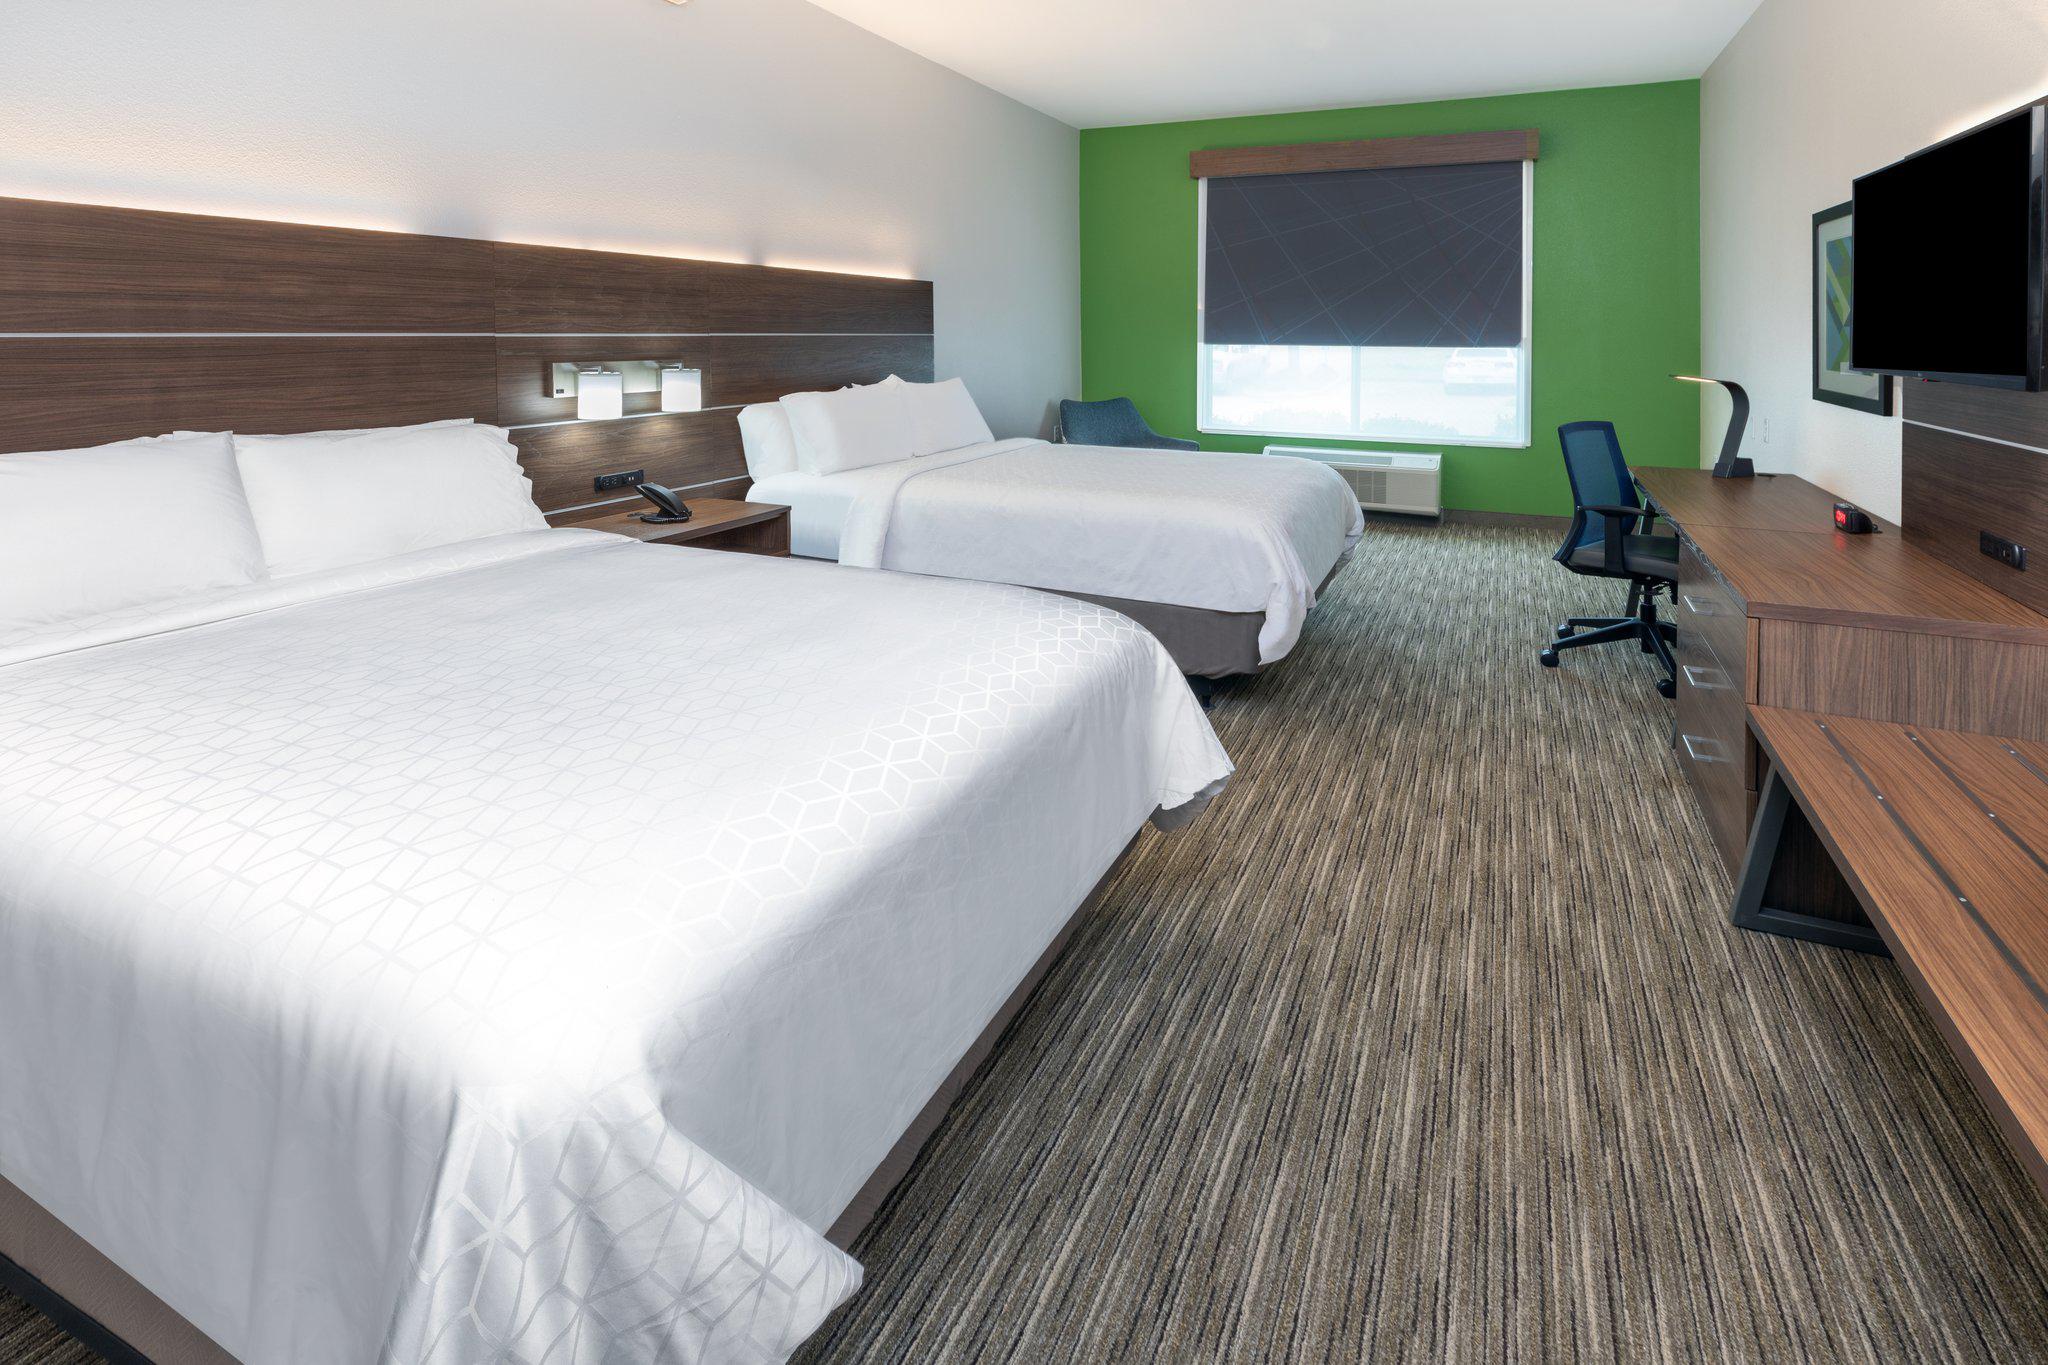 Holiday Inn Express & Suites Shreveport - West, an IHG Hotel Shreveport (318)506-8148